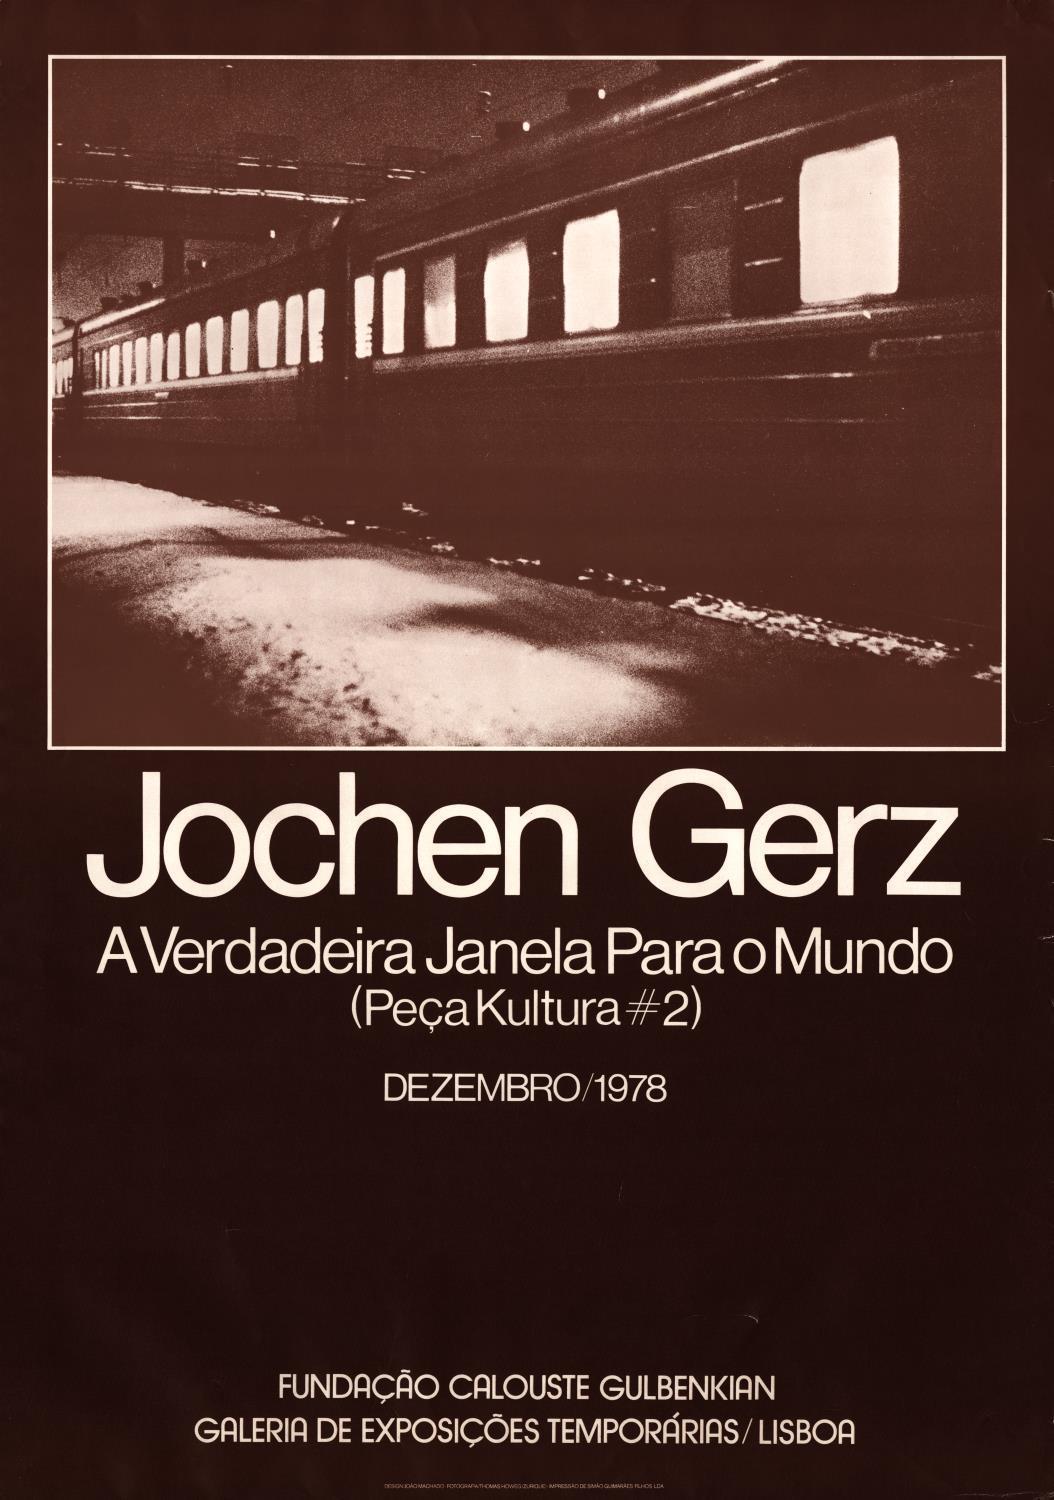 Jochen Gerz